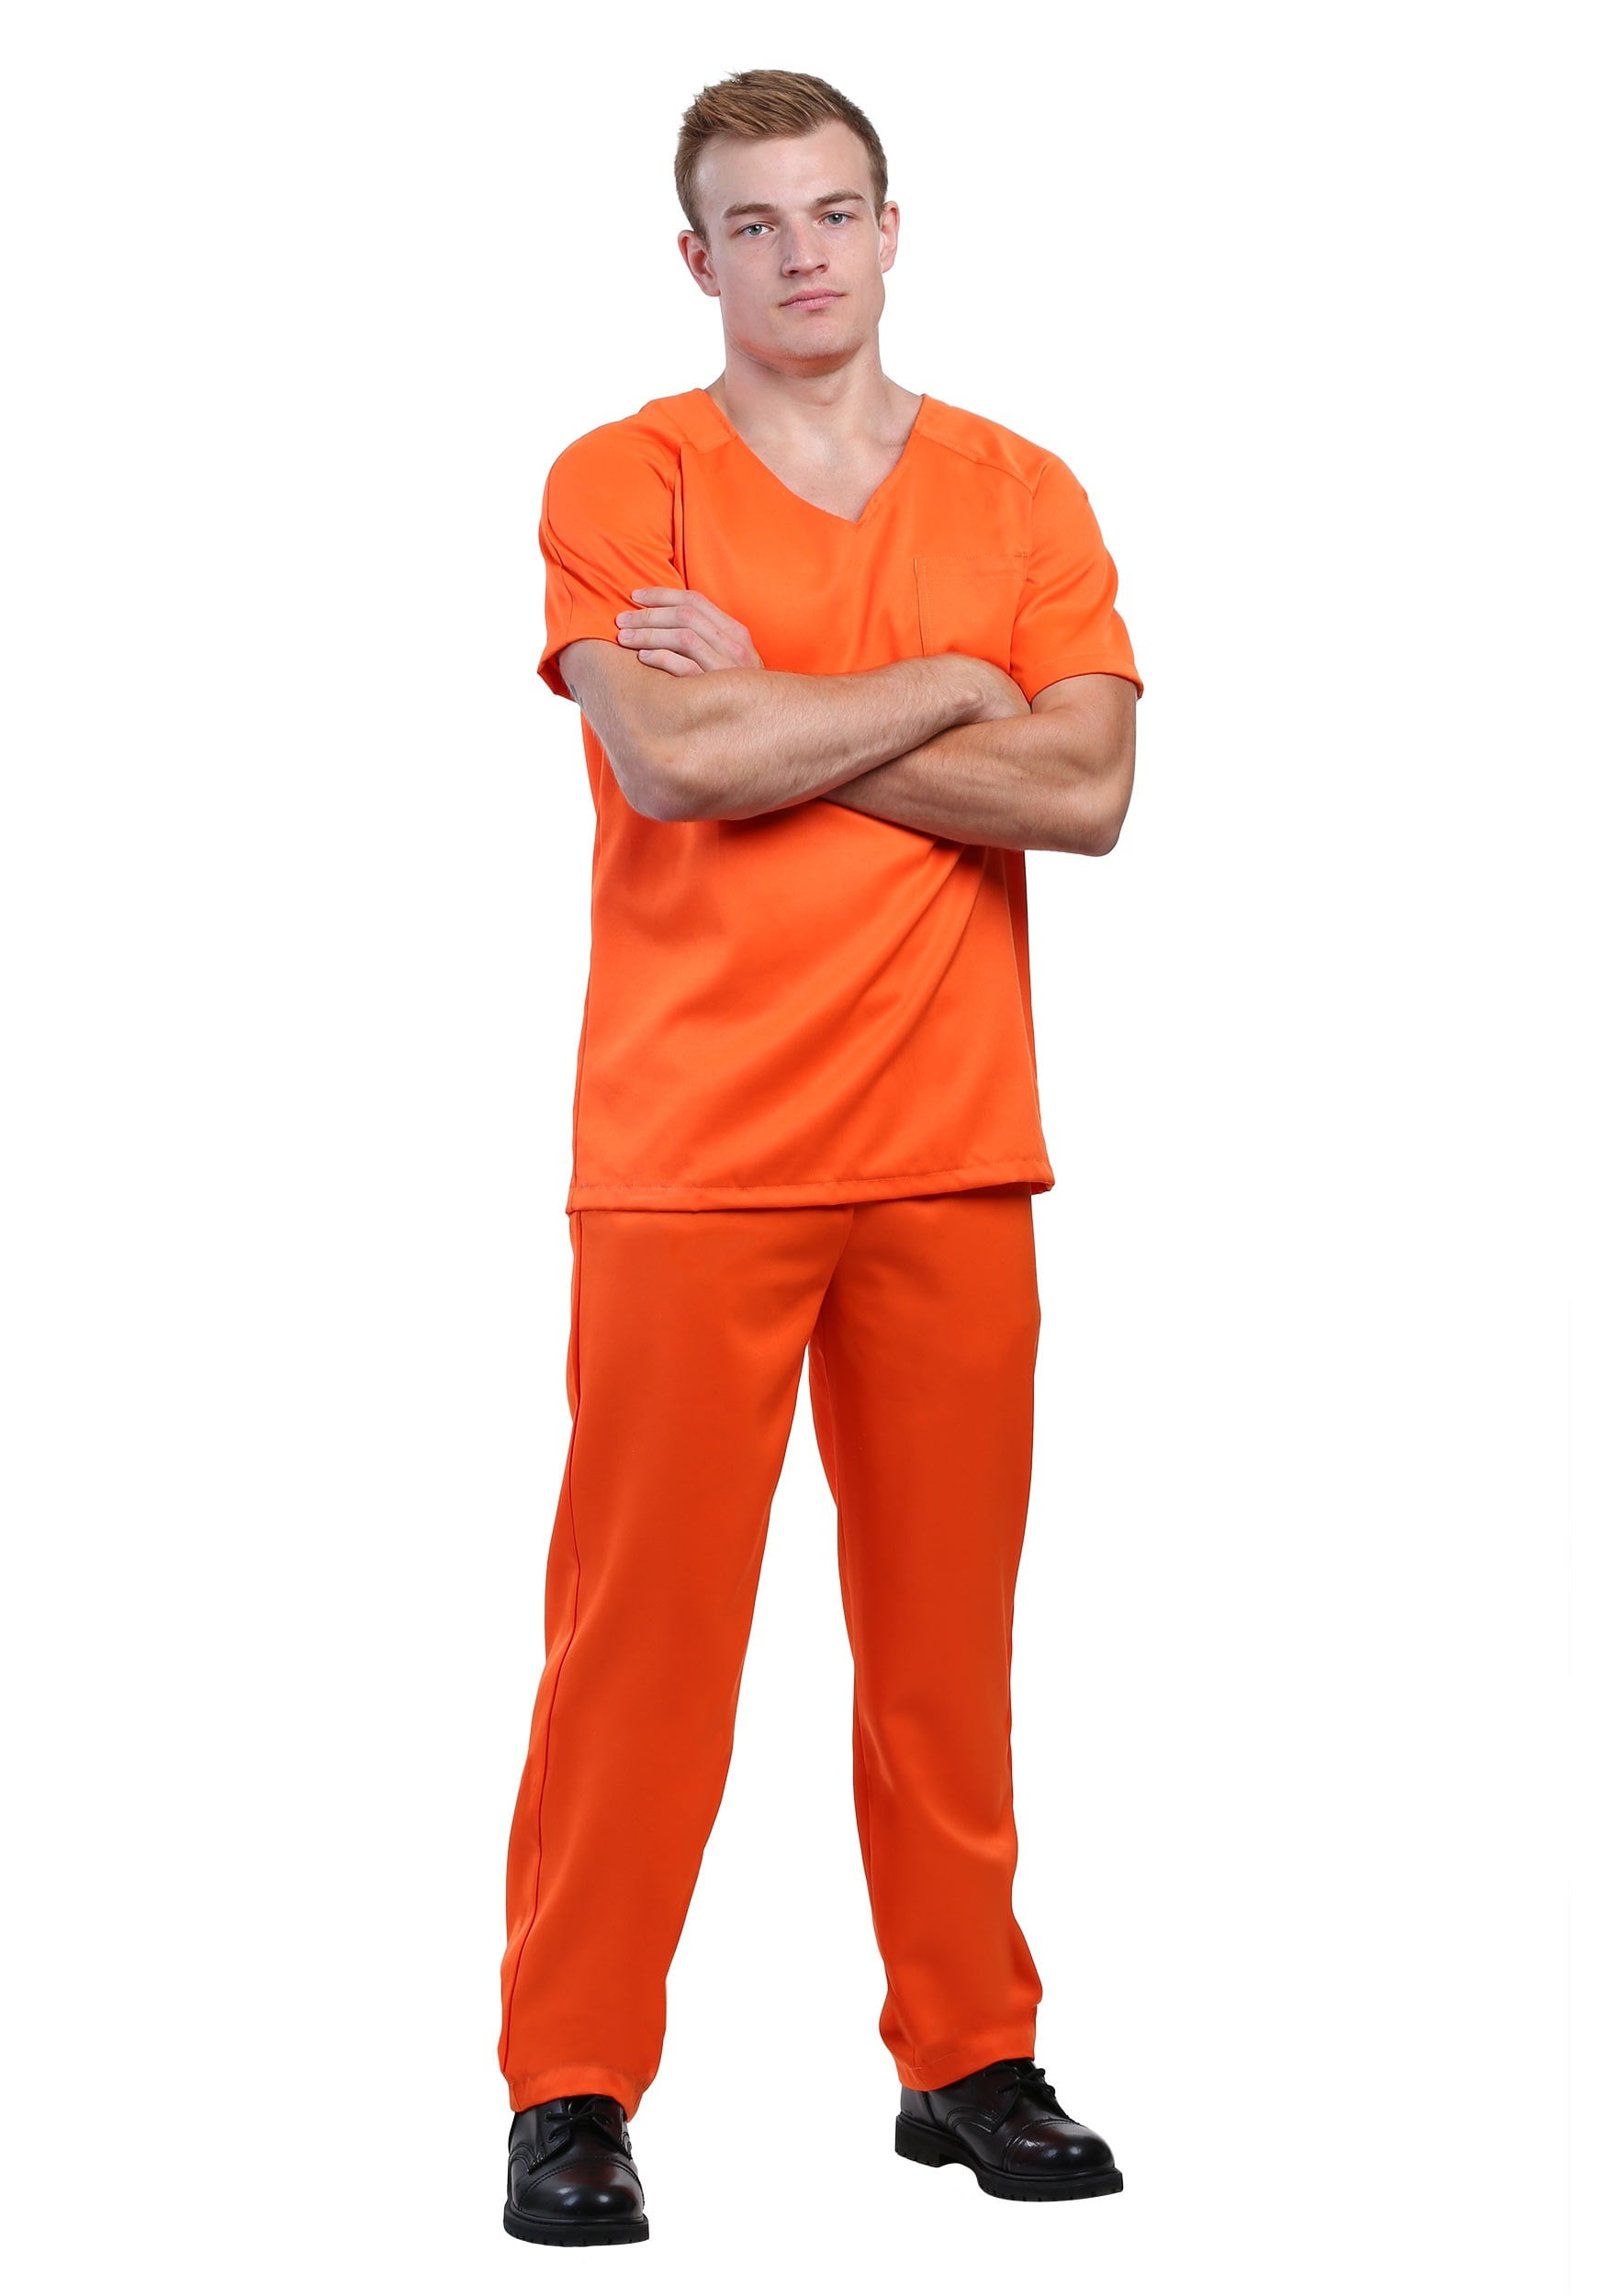 Men S Orange Prisoner Costume